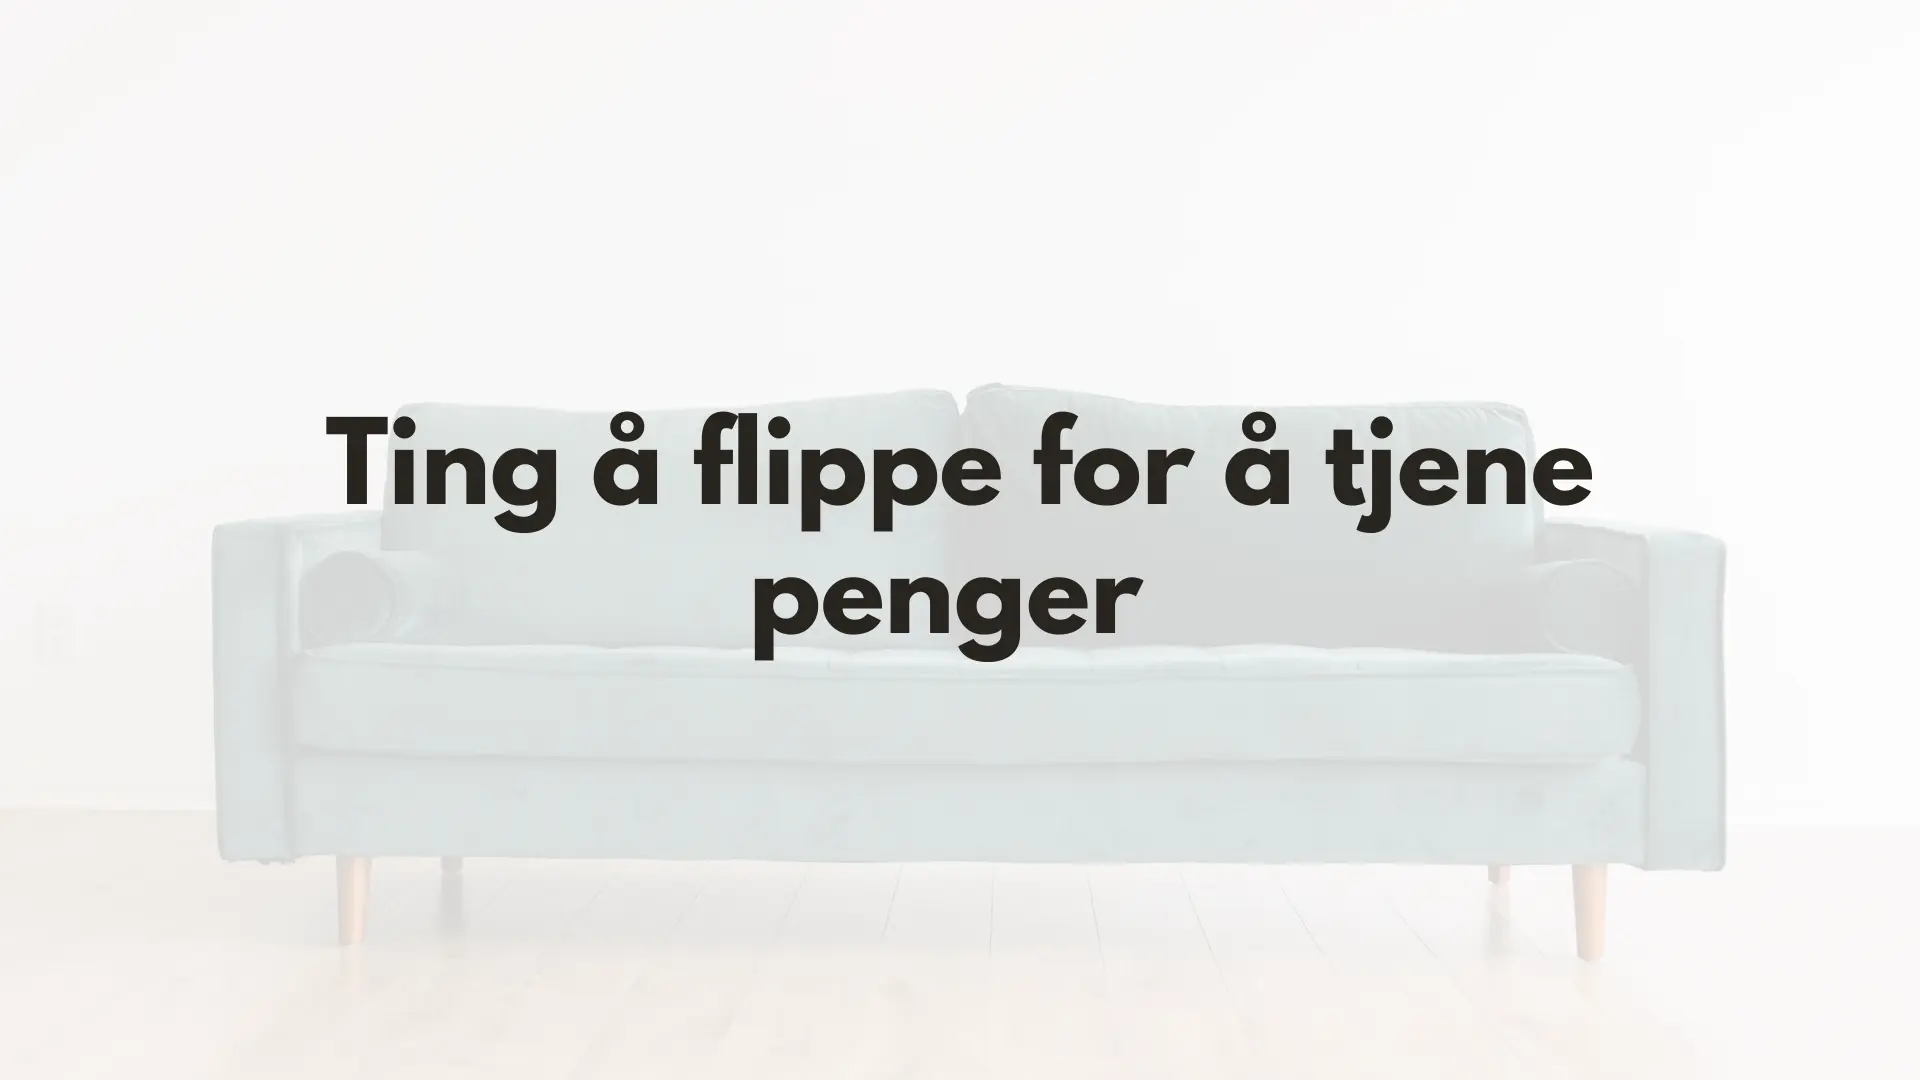 Flipping - fremhevet bilde med tekst og bilde av en sofa i bakgrunnen